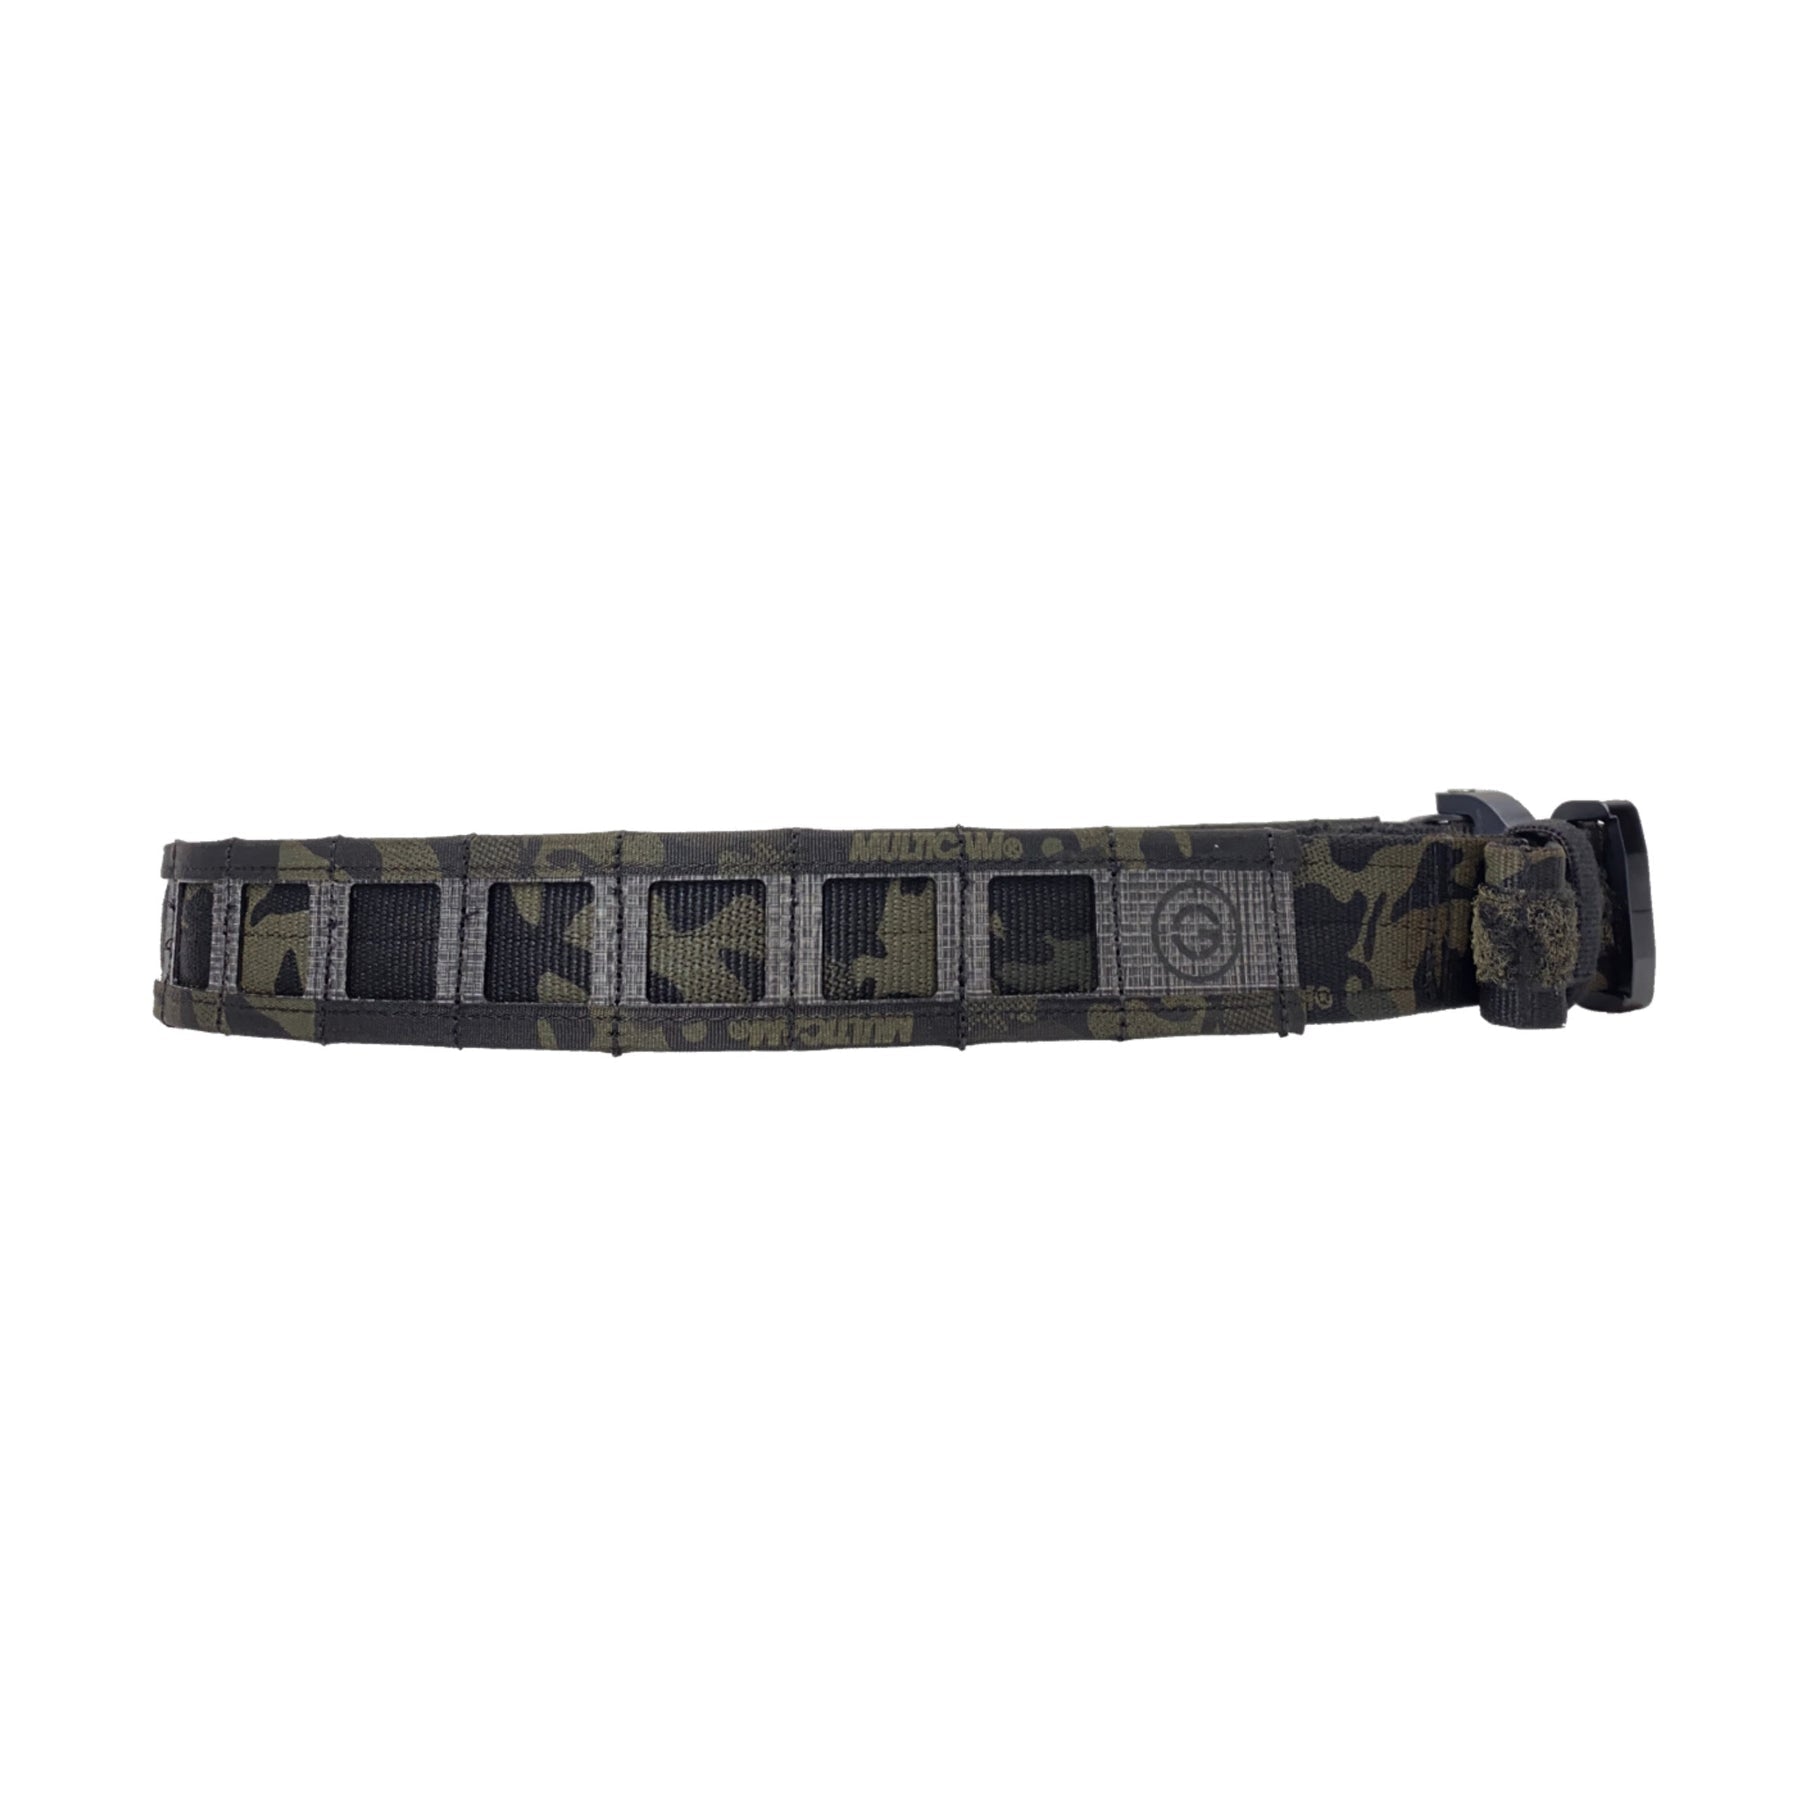 GBRS Group Assaulter Belt System v2